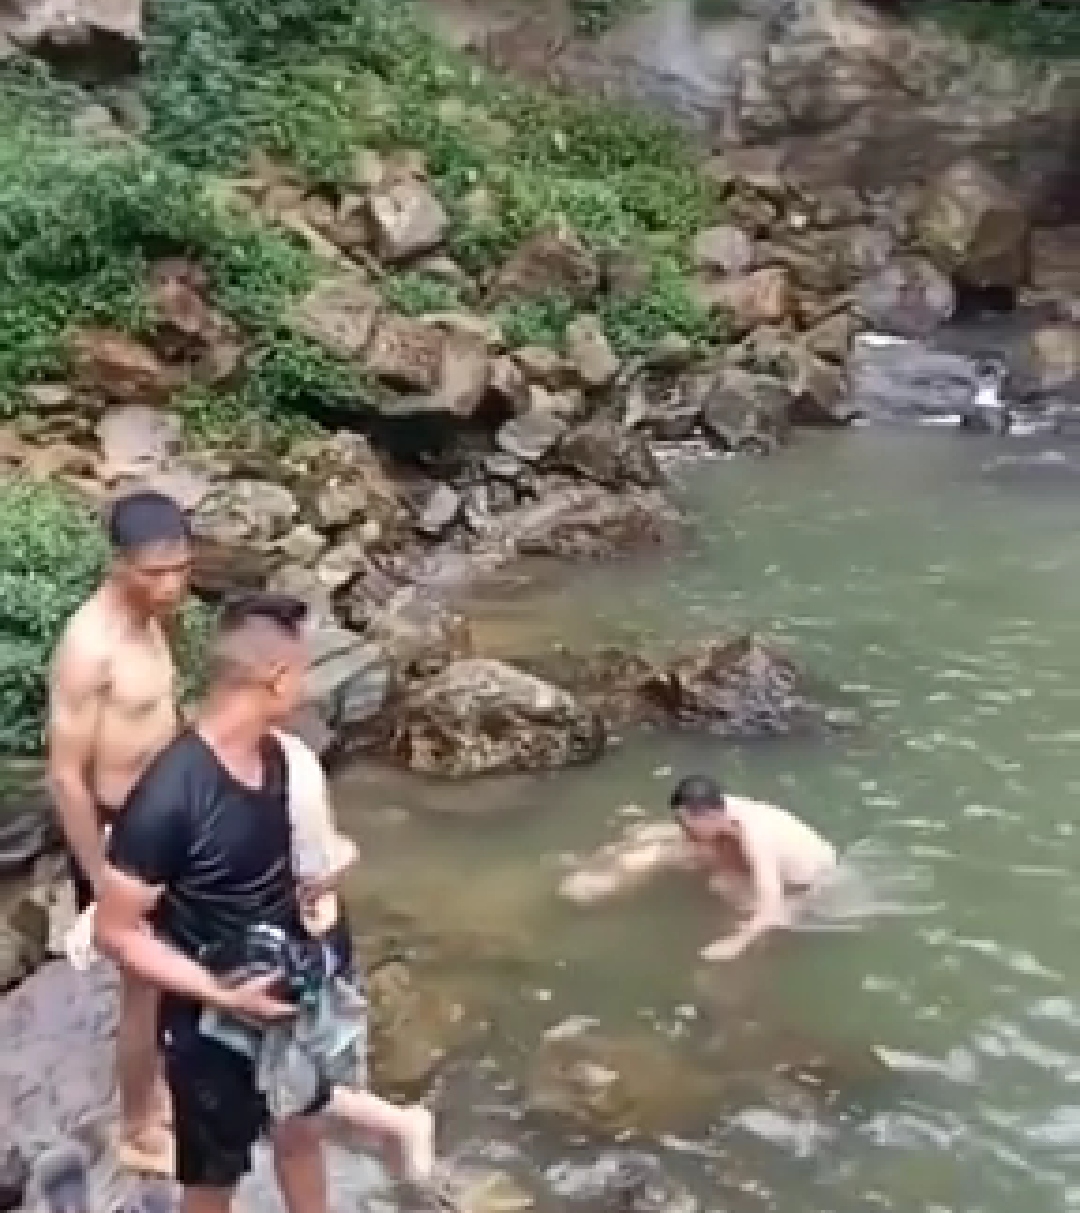 Một người tử vong khi đi tắm thác Đát ở Yên Bái